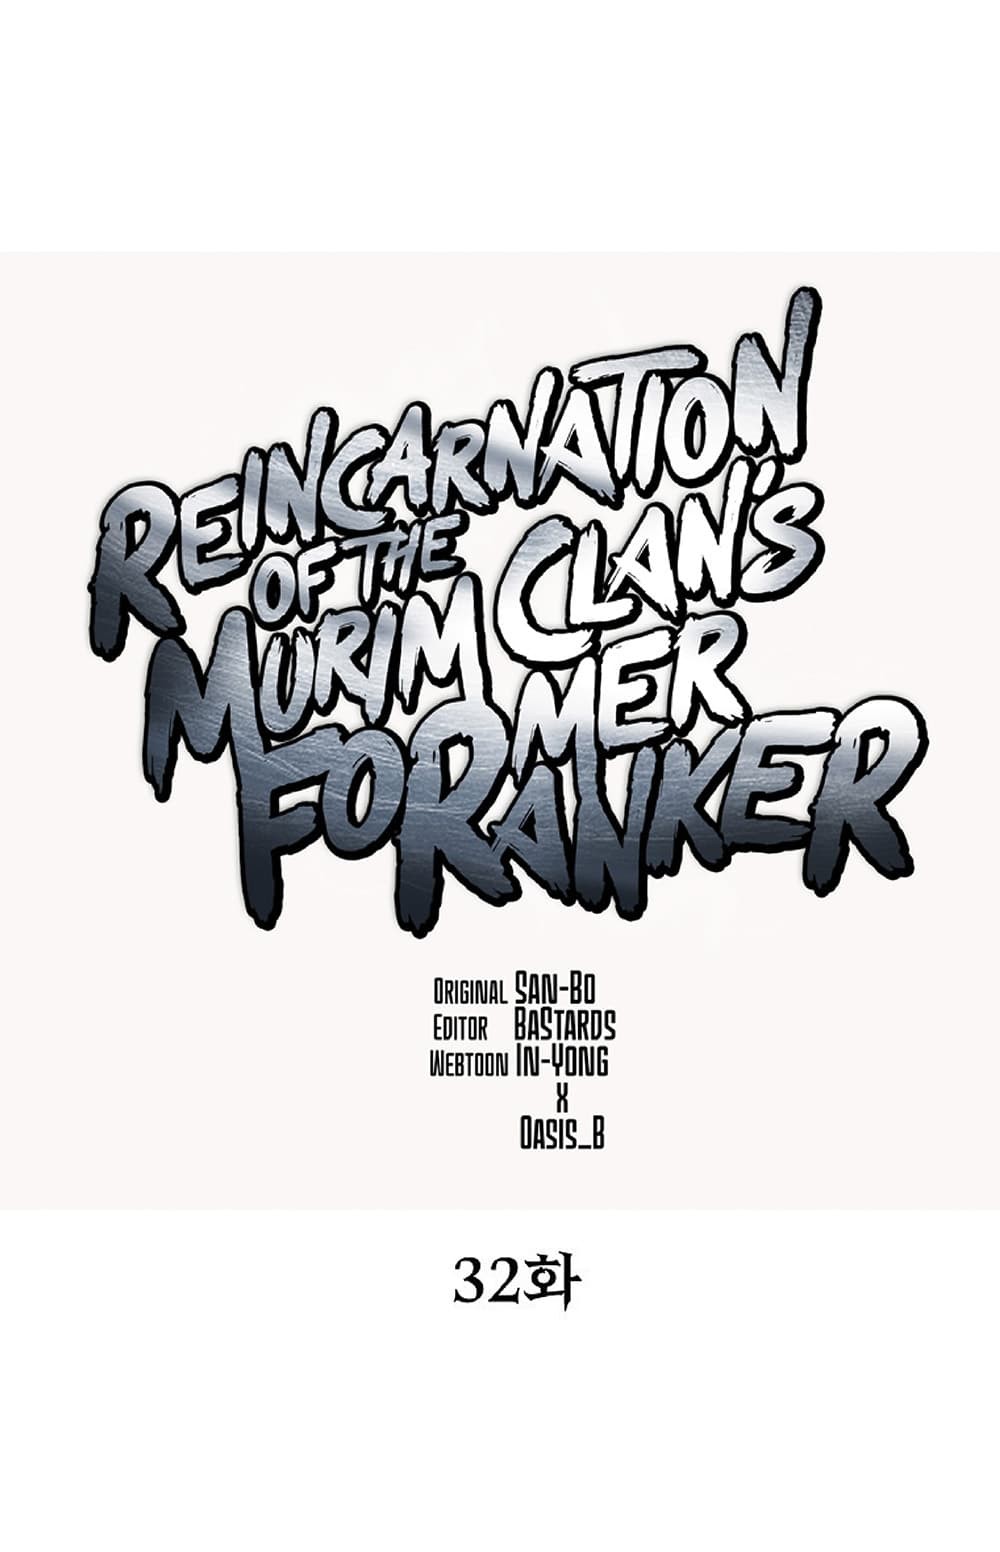 Reincarnation-of-the-Murim-Clans-Former-Ranker--32-8.jpg